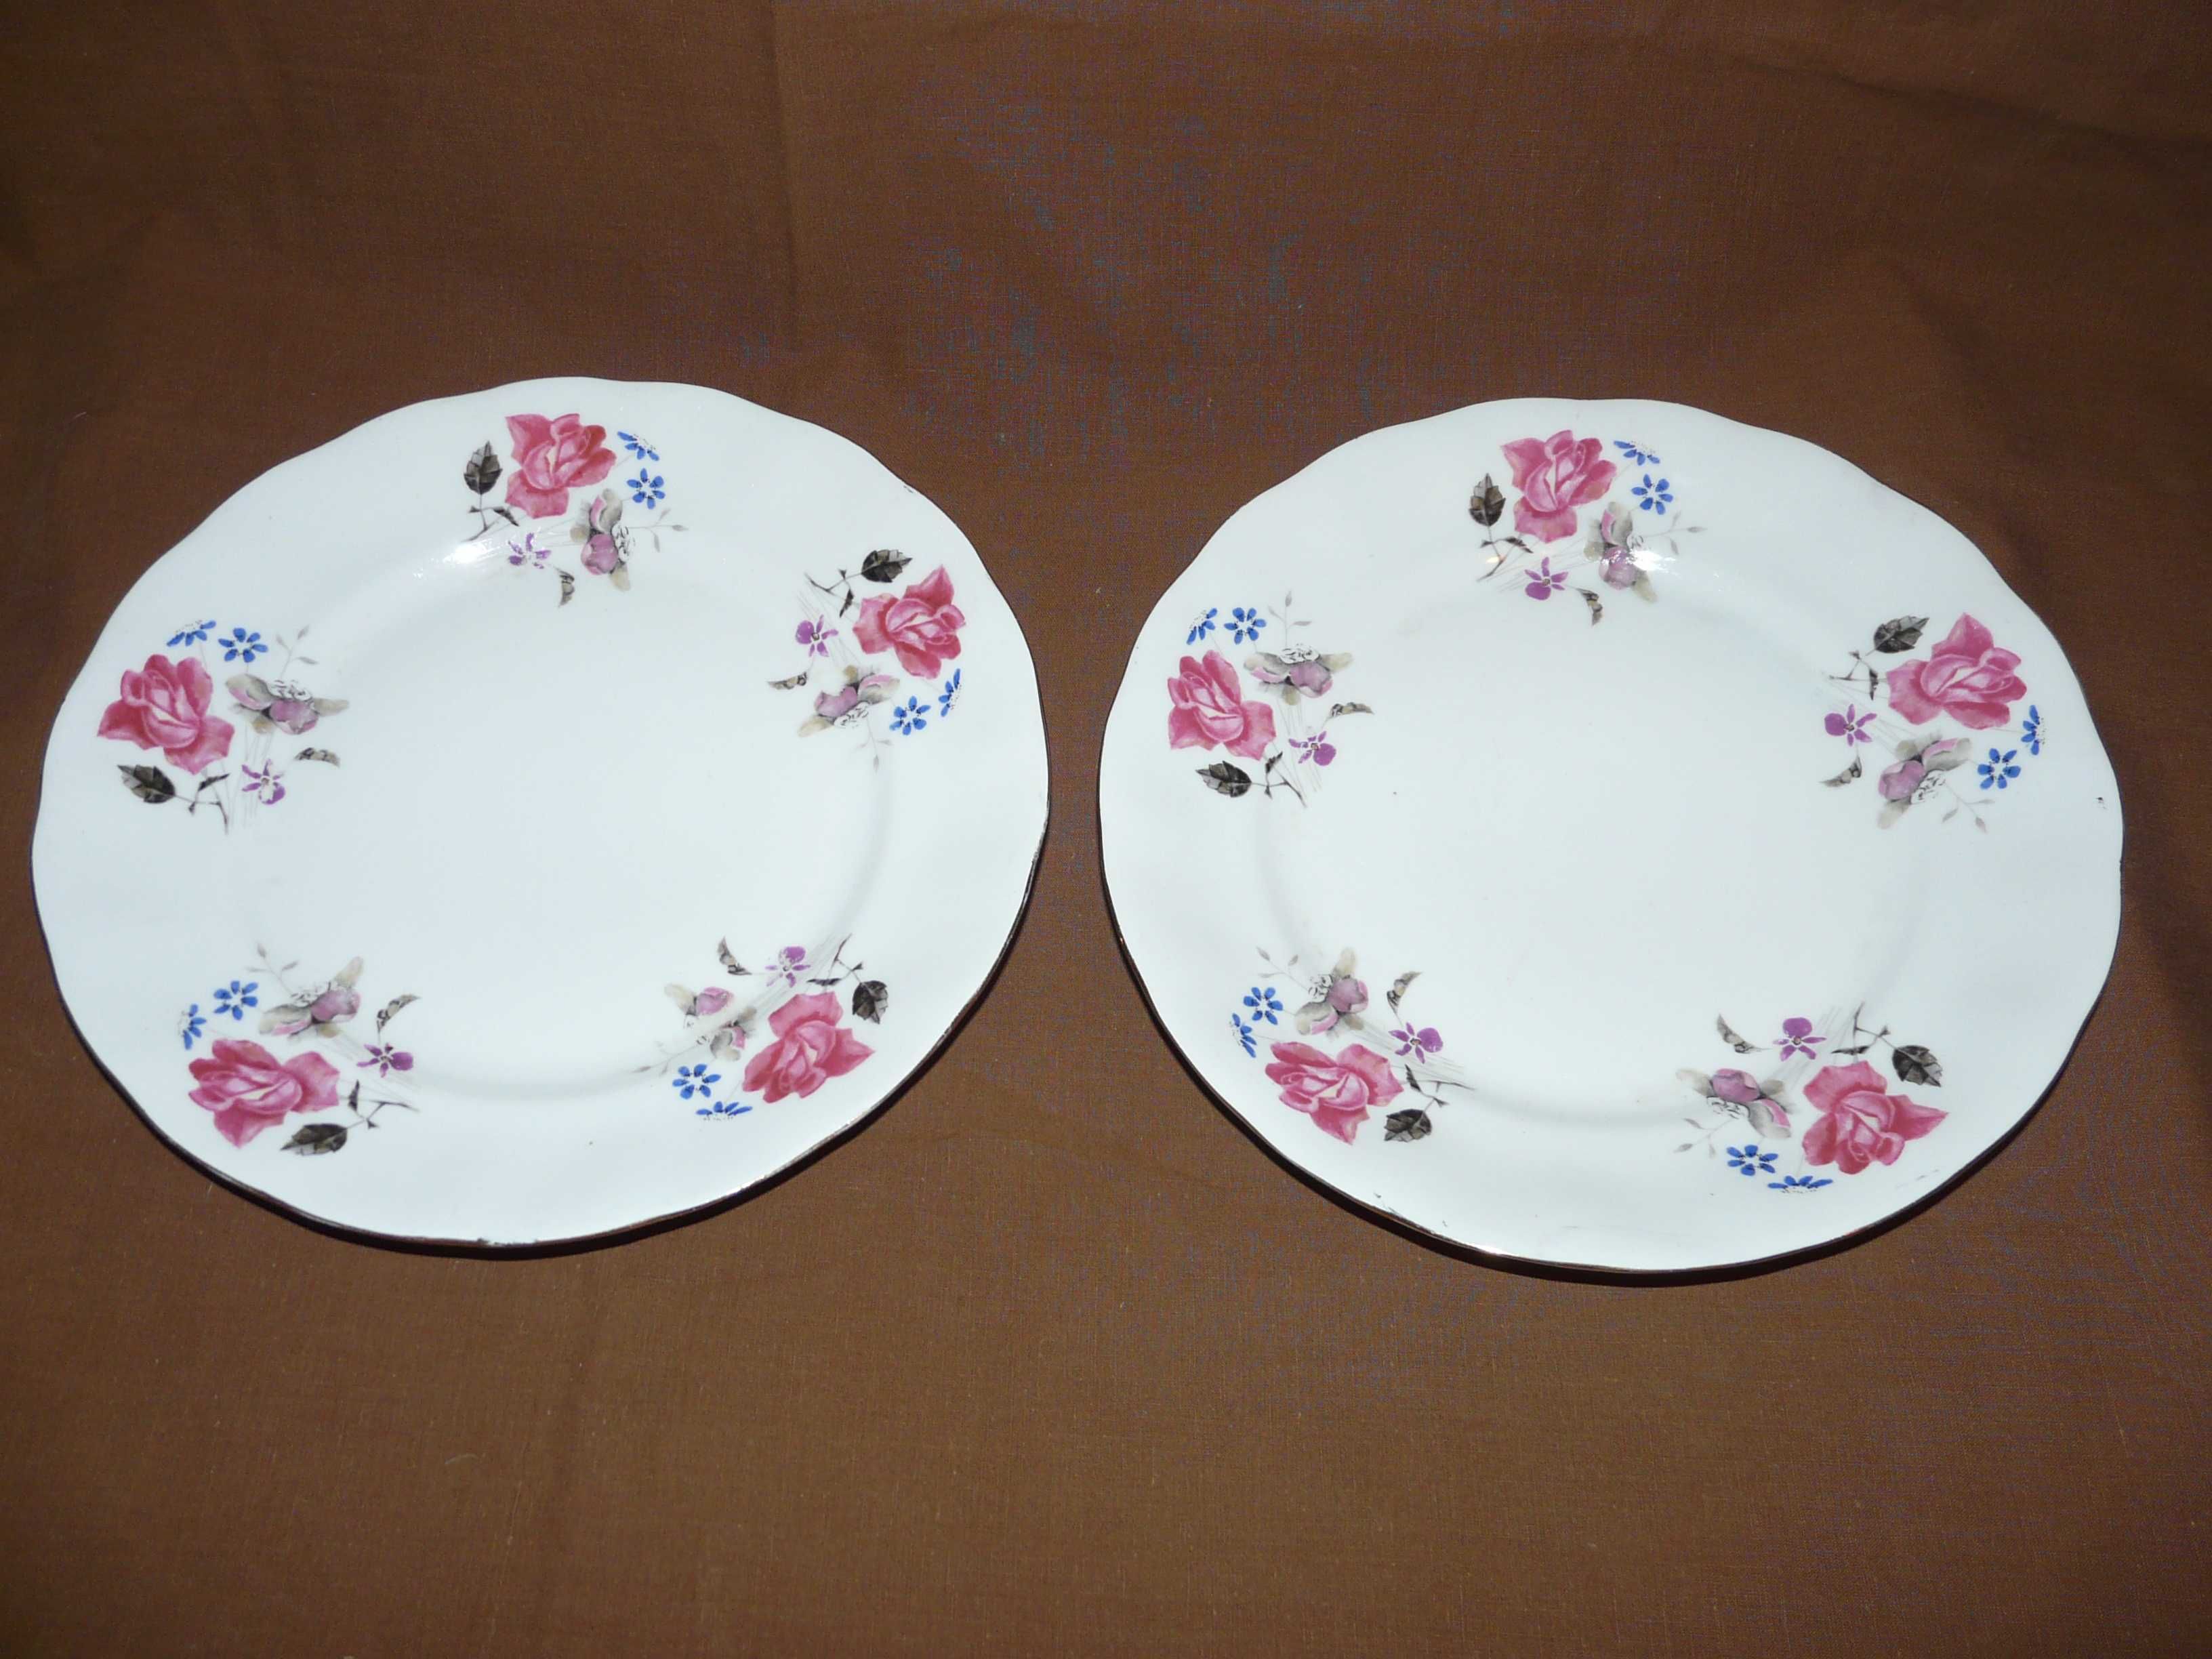 Karolina talerz obiadowy ręcznie malowany w róże 26 cm